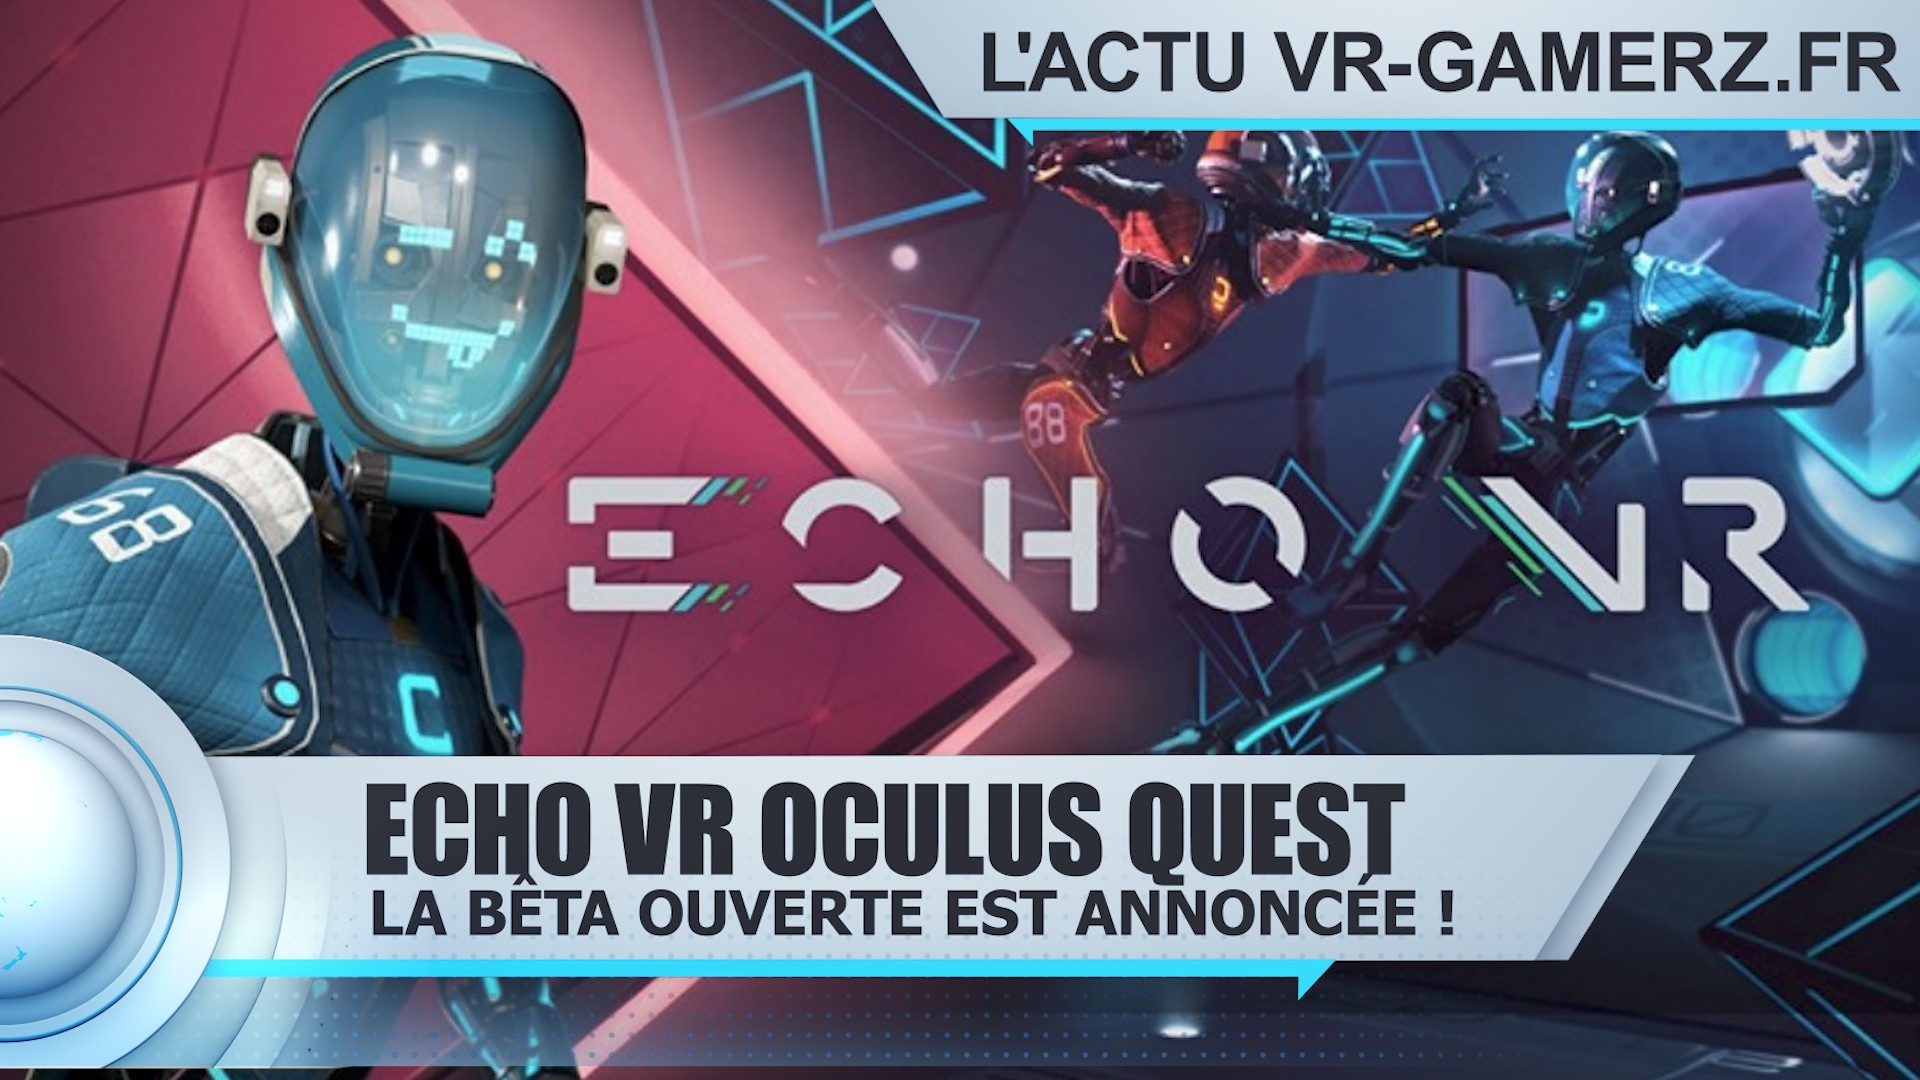 Echo VR Oculus quest : La date de la bêta ouverte est dévoilée